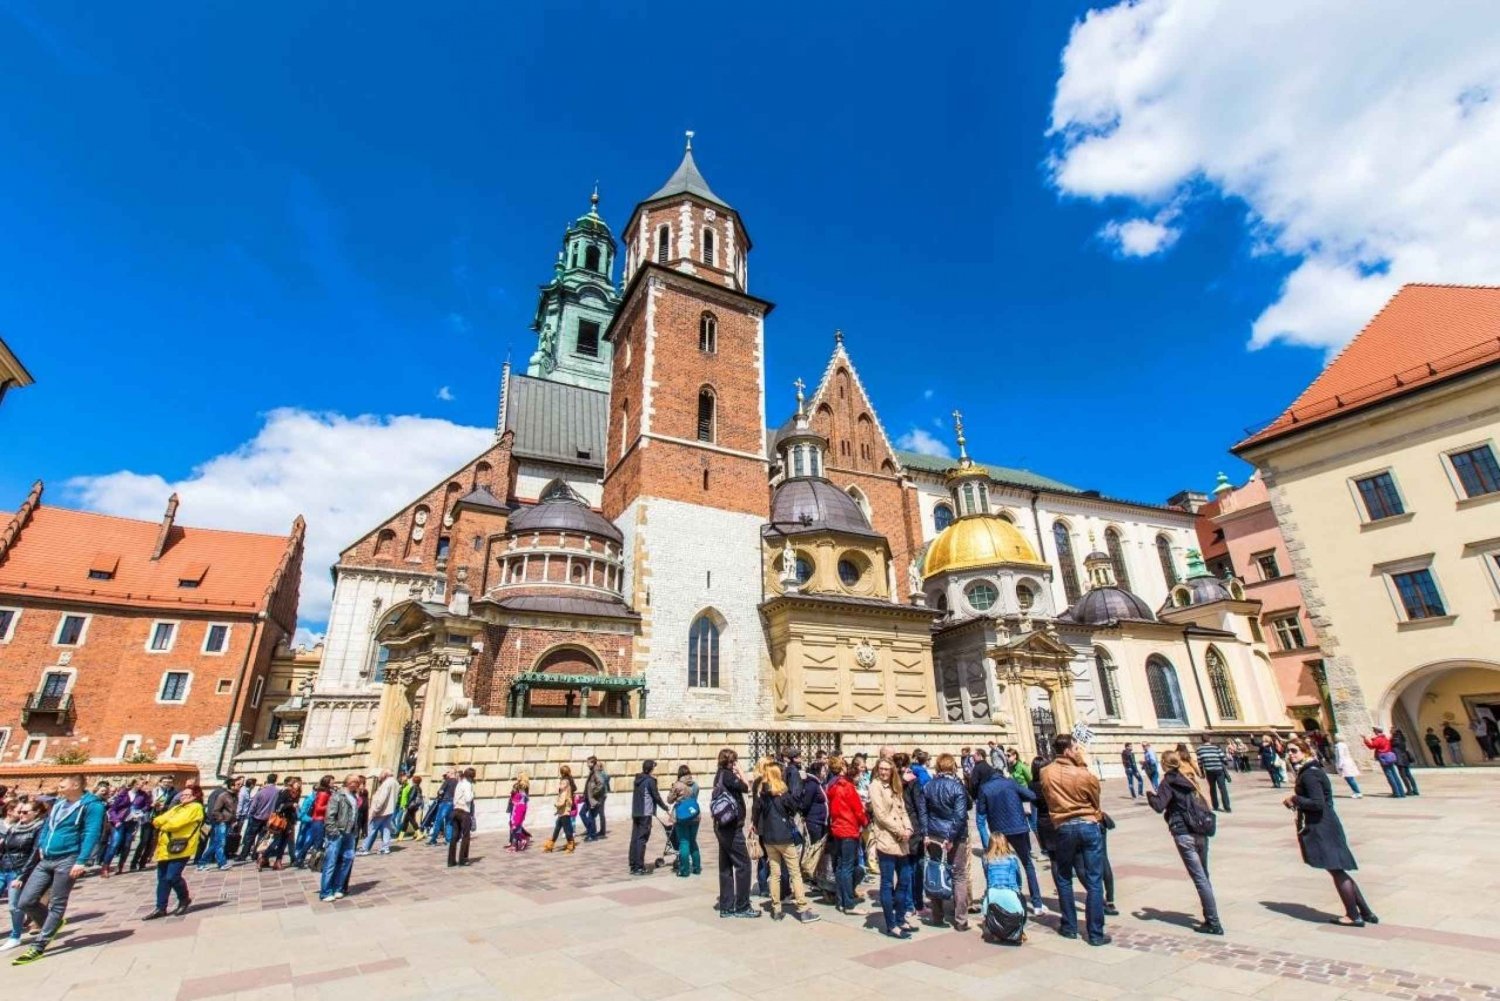 Kasteel Wawel, kathedraal, oude binnenstad en St. Maria Basiliek